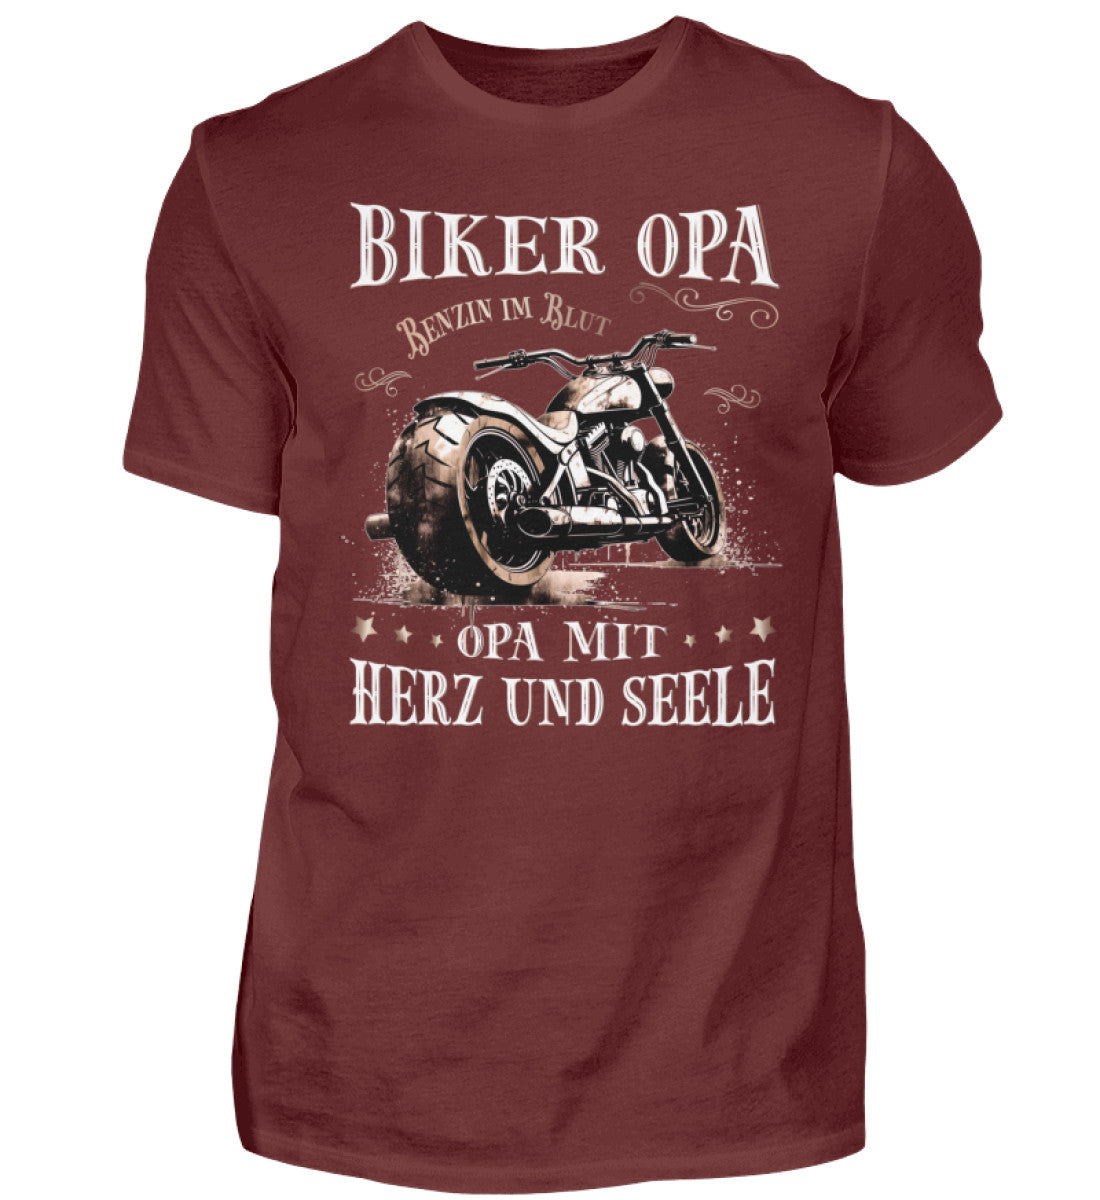 Ein Biker T-Shirt für Motorradfahrer von Wingbikers mit dem Aufdruck, Biker Opa - Benzin im Blut - Opa mit Herz und Seele, in weinrot.